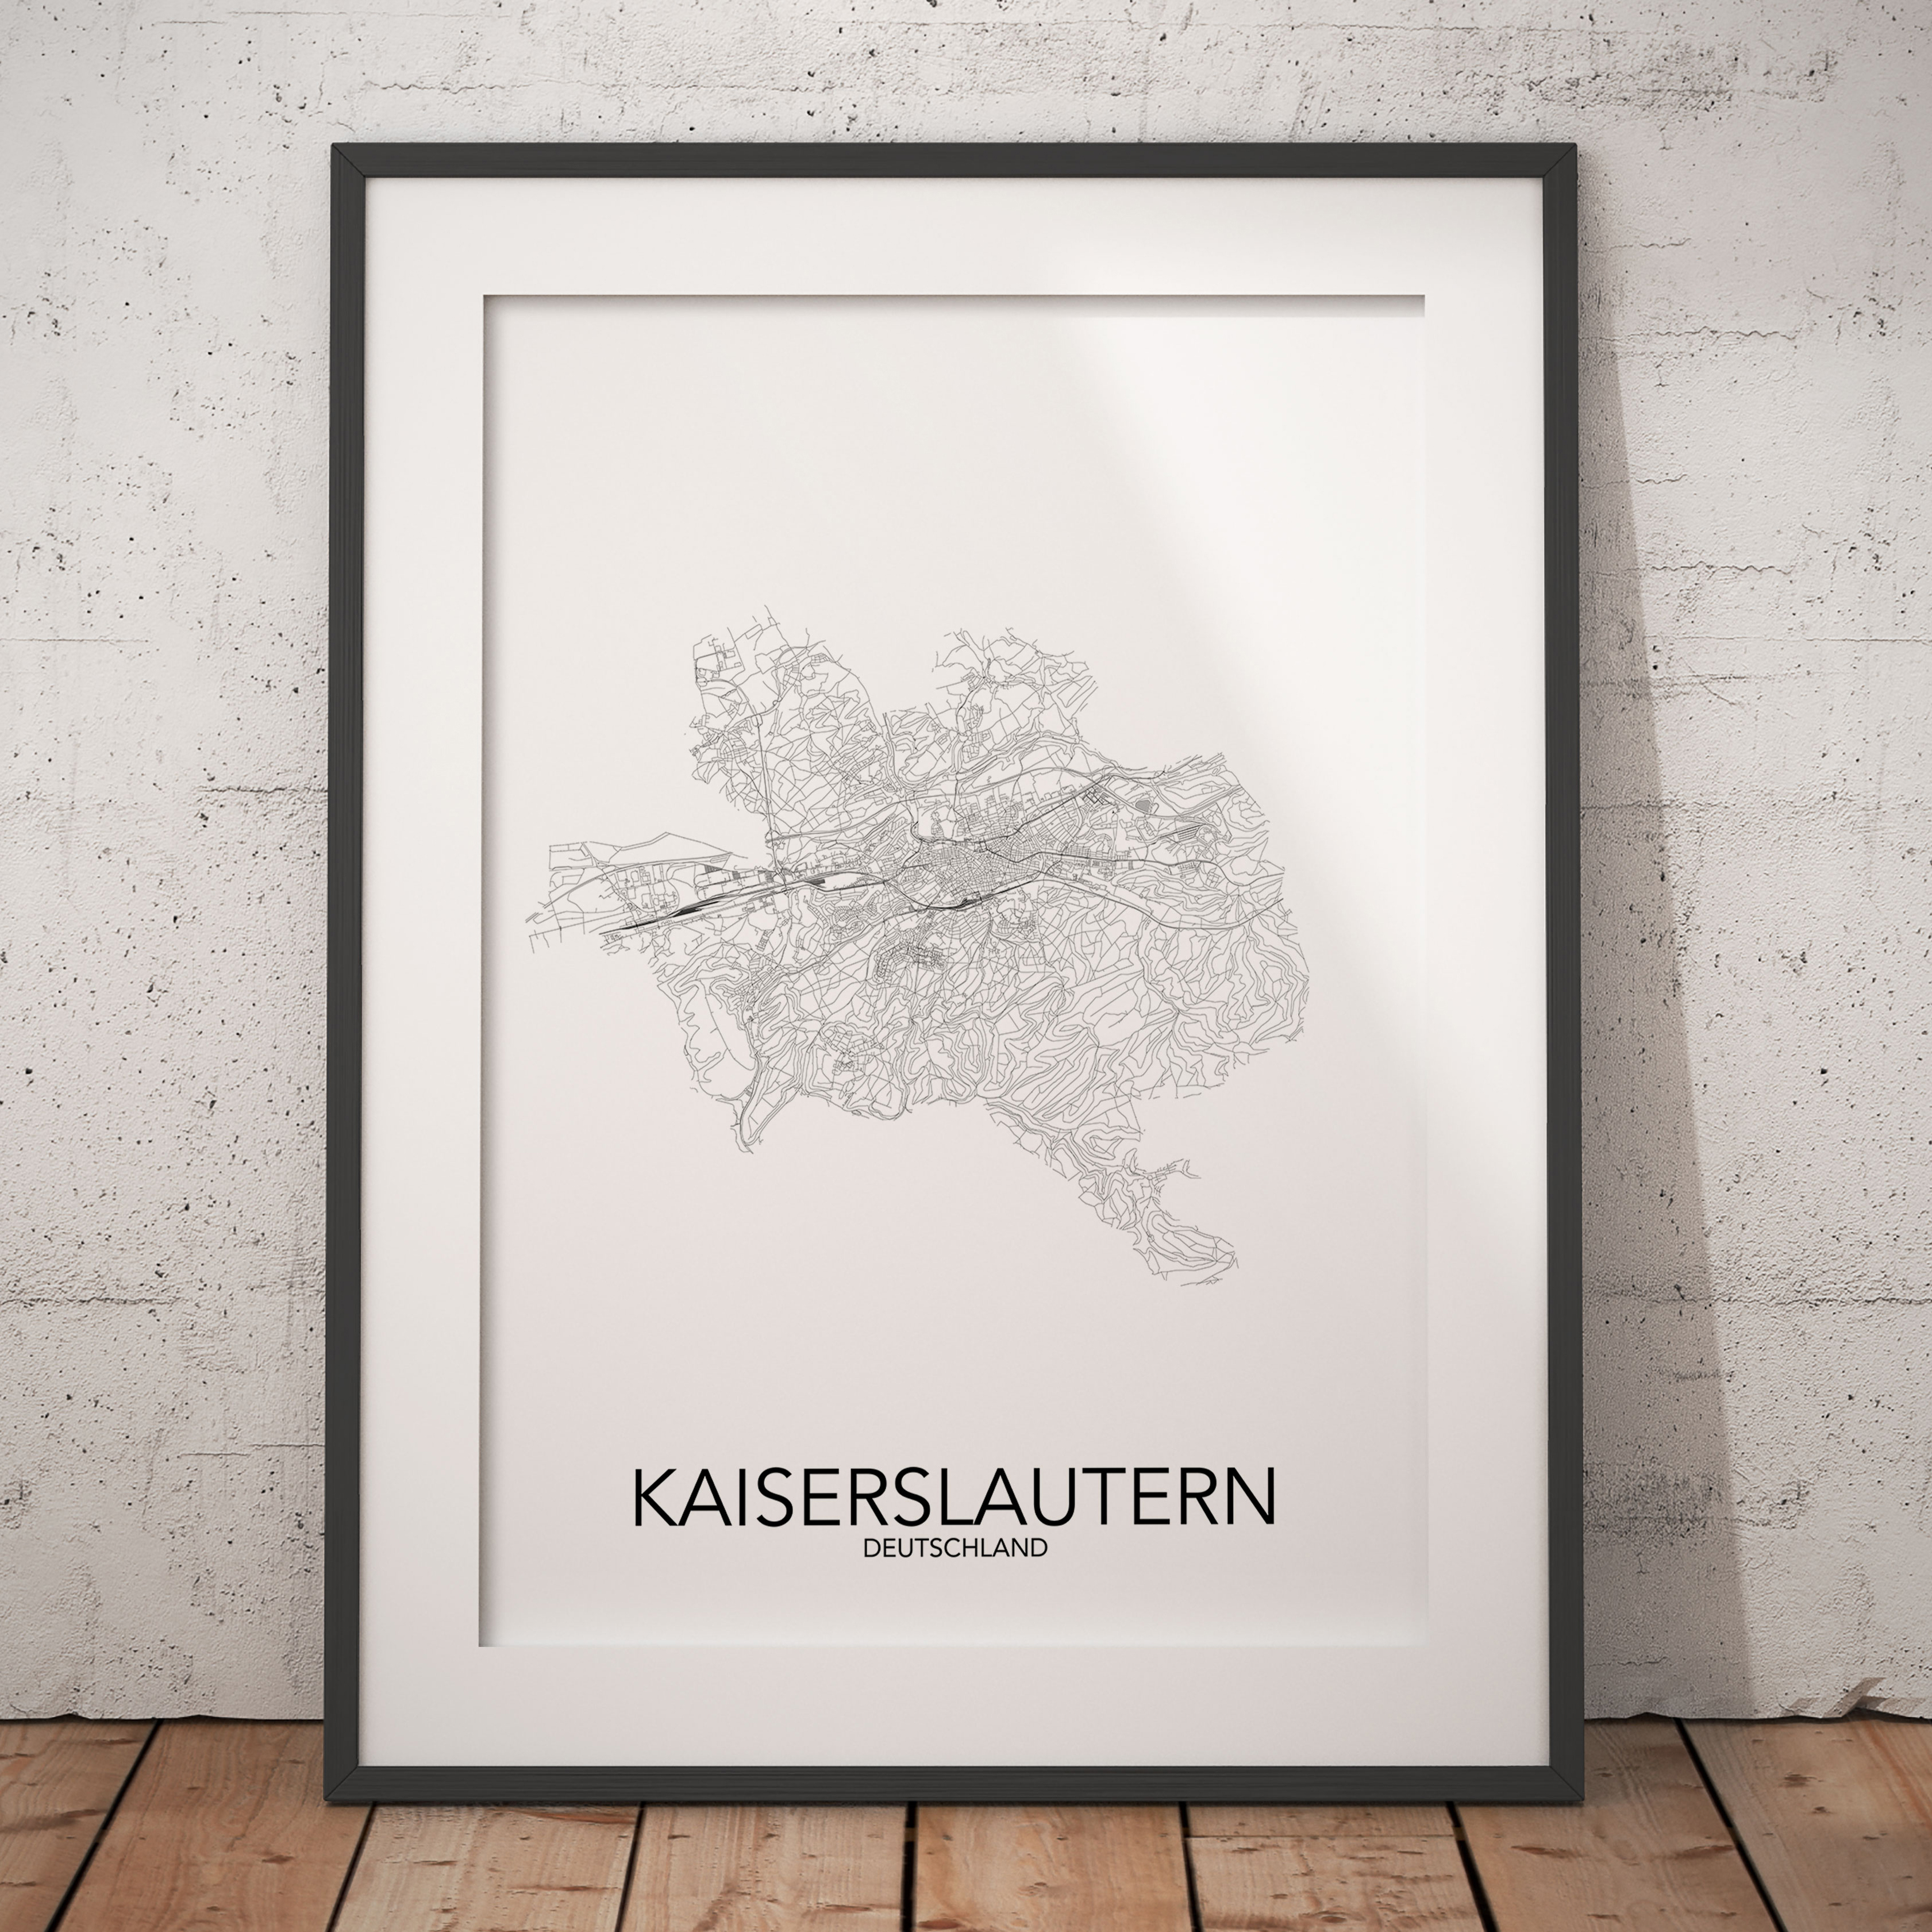 posterlin – Städteposter in schwarz-weiß der Stadt